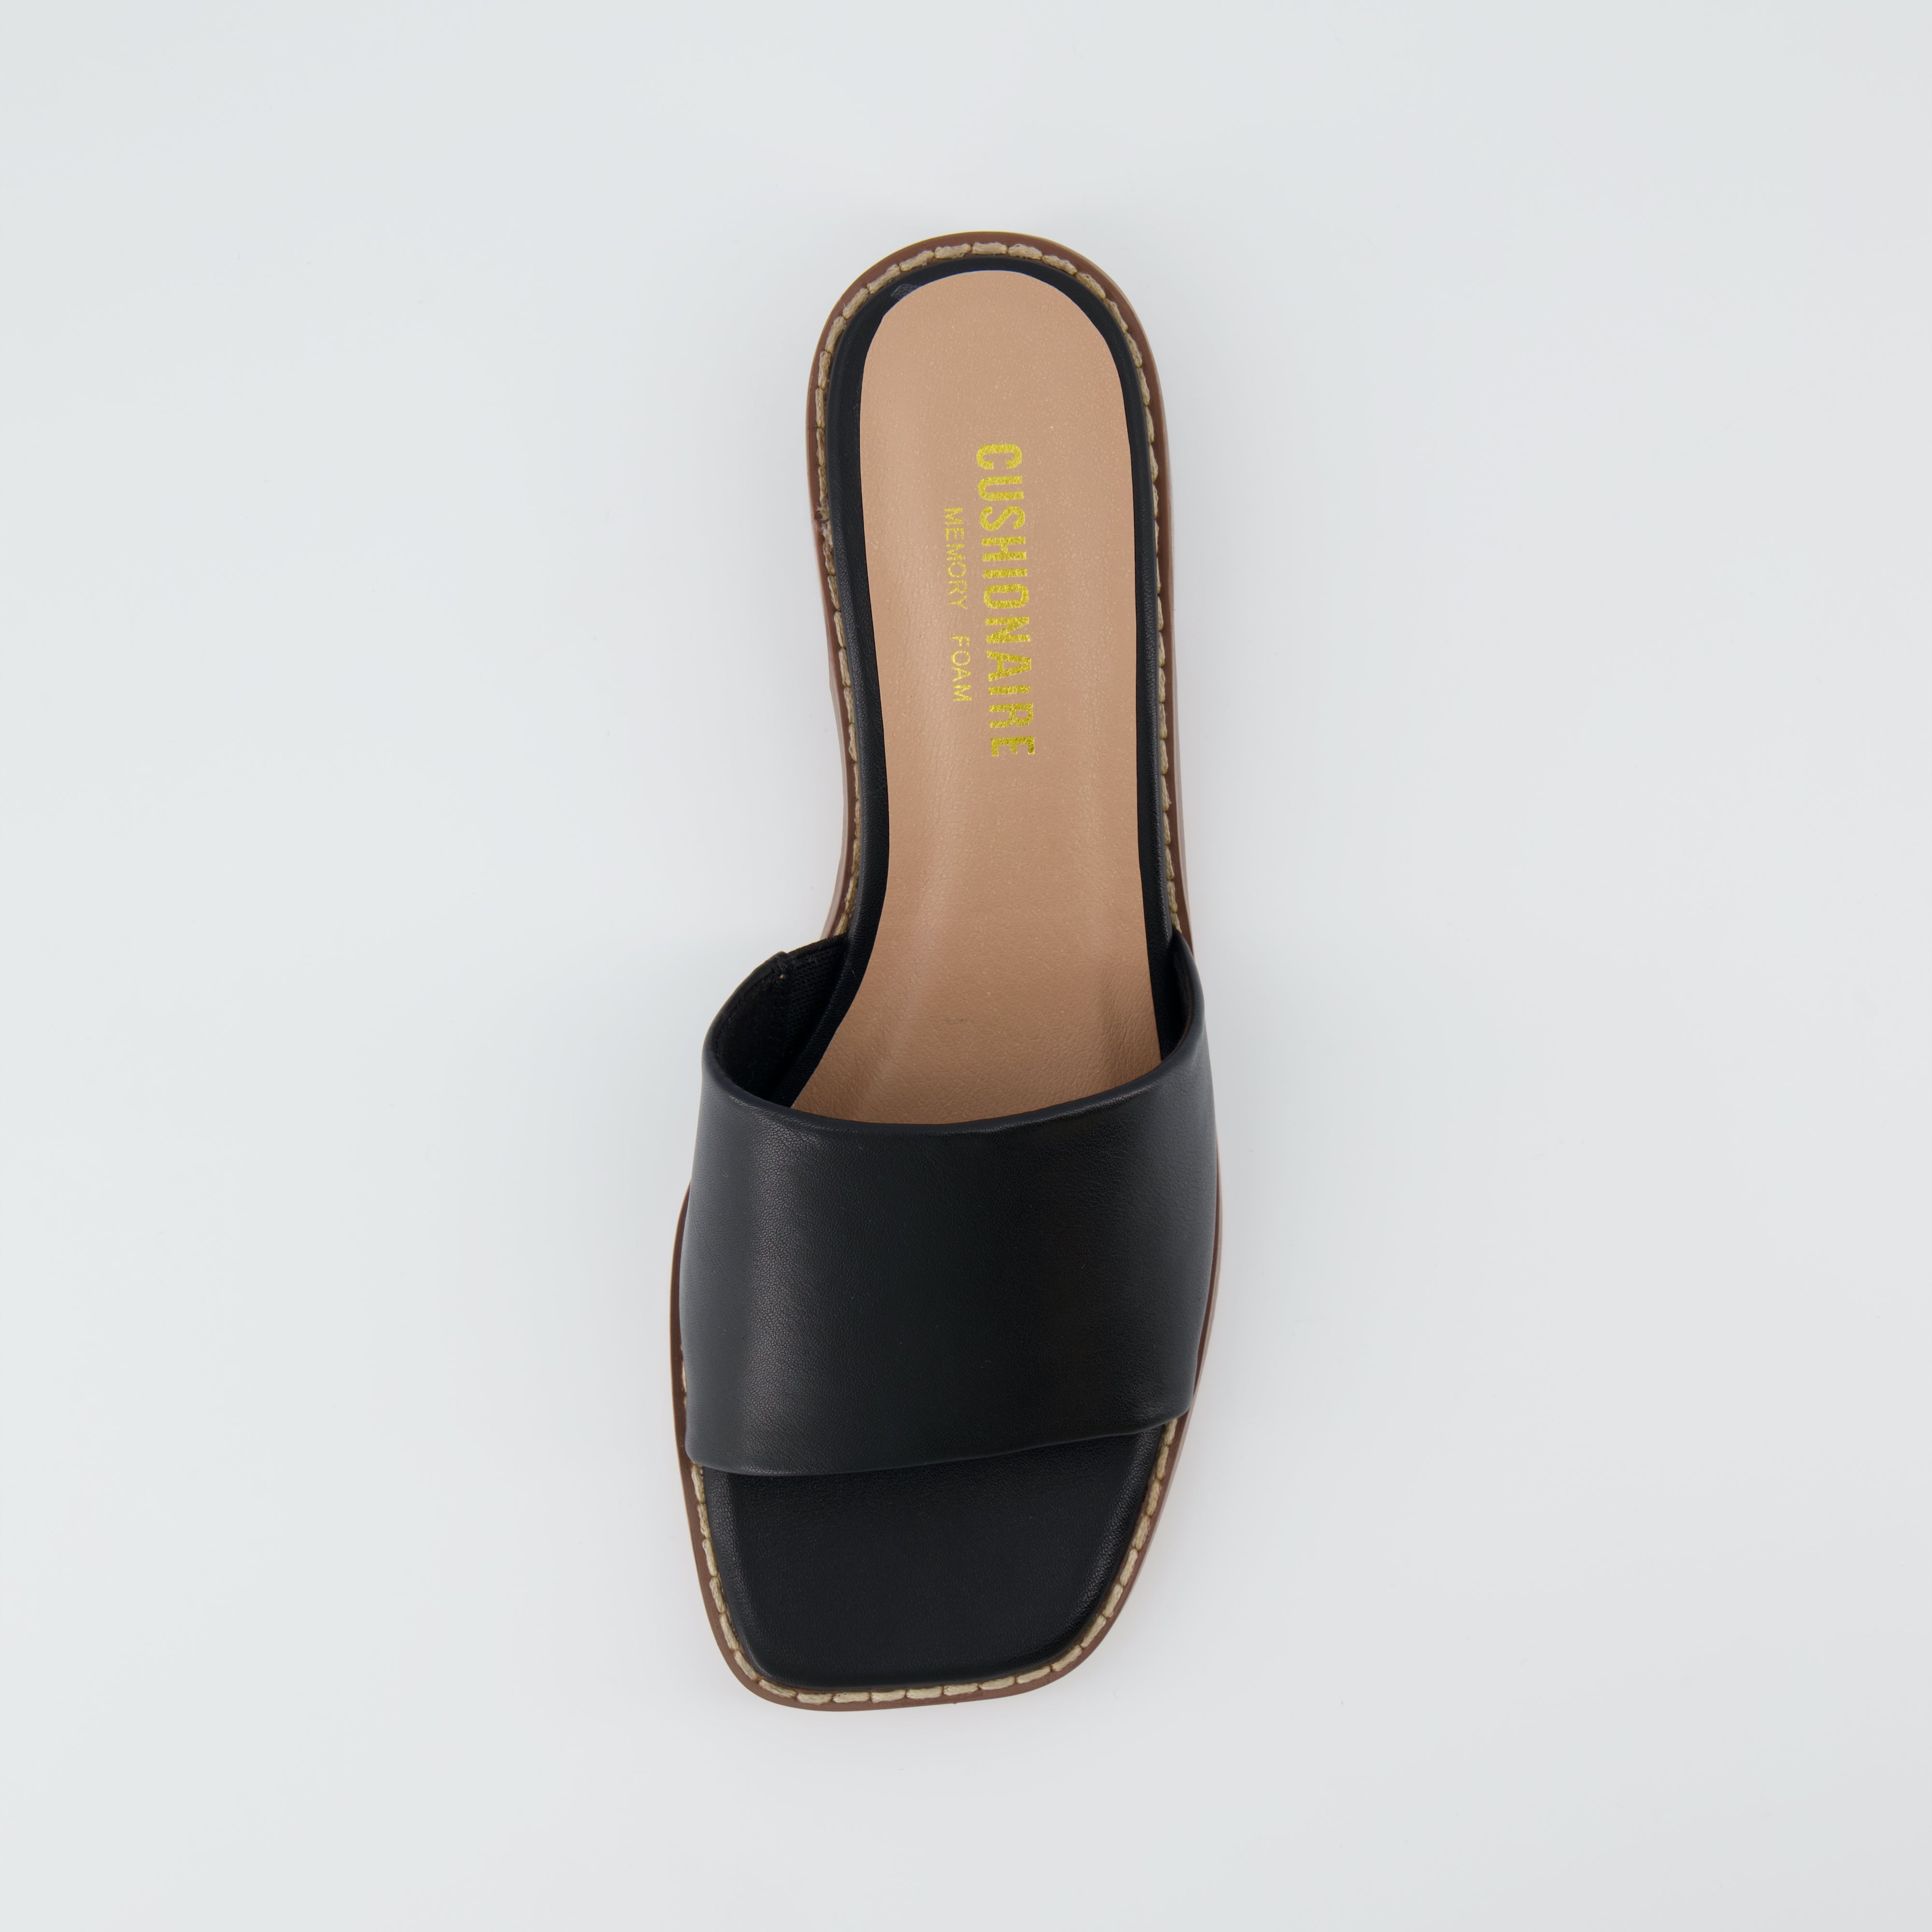 Sage Slide Sandals